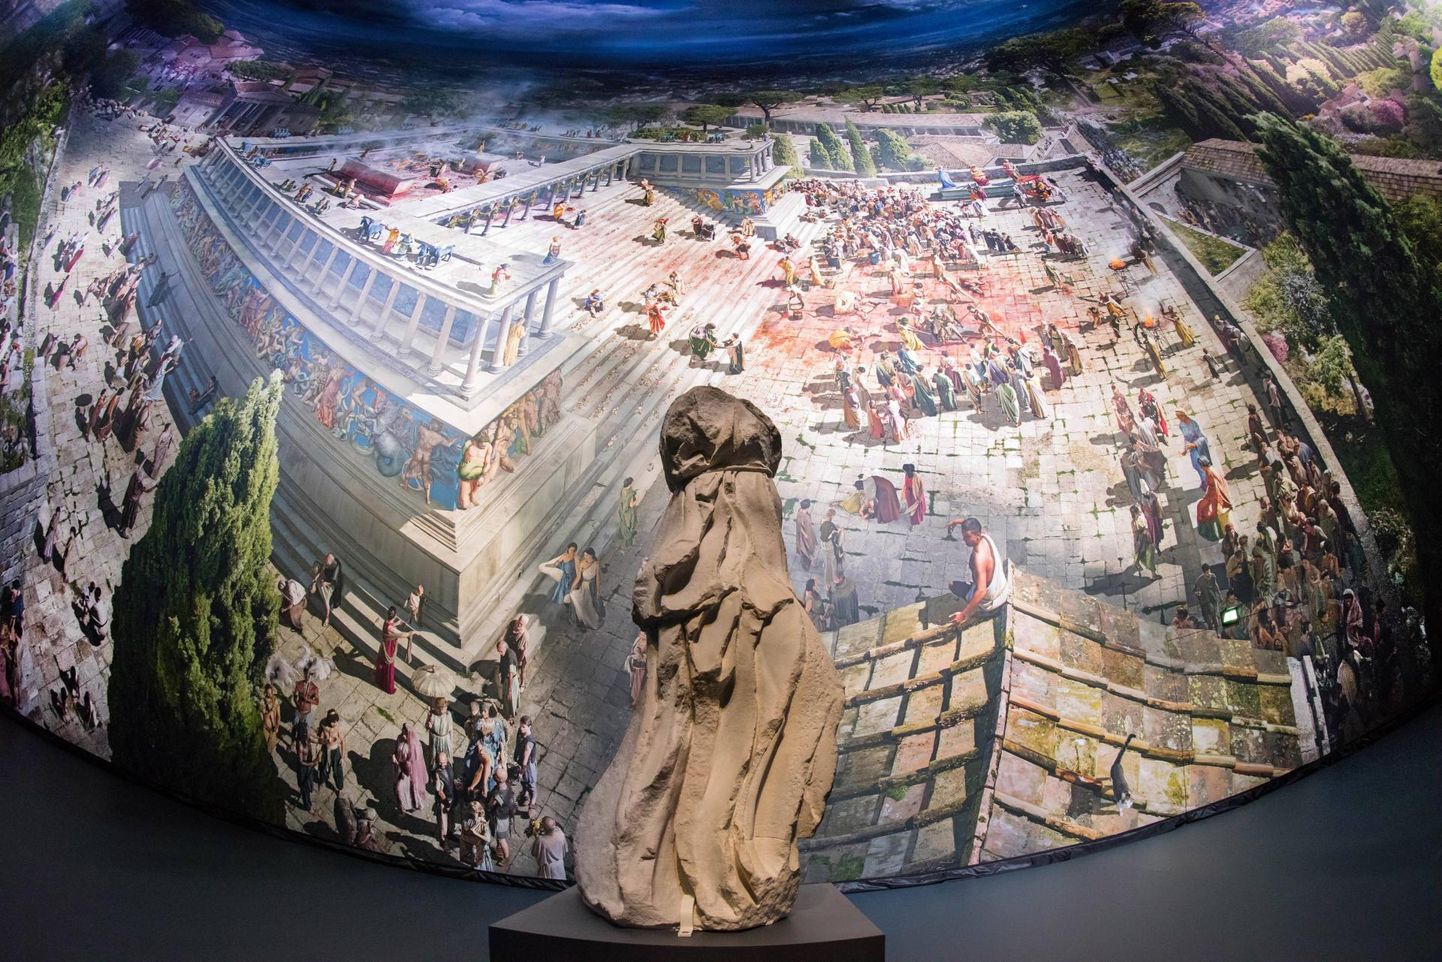 Kuninglikust Pergamoni linnast sai elutruu kogemuse Das Panoramas, kus antiikse Pergamoni panoraami on püütud taaselustada huvitavate kunstiliste efektidega. 360-kraadise panoraami on loonud kunstnik Yadegar Asisi. 